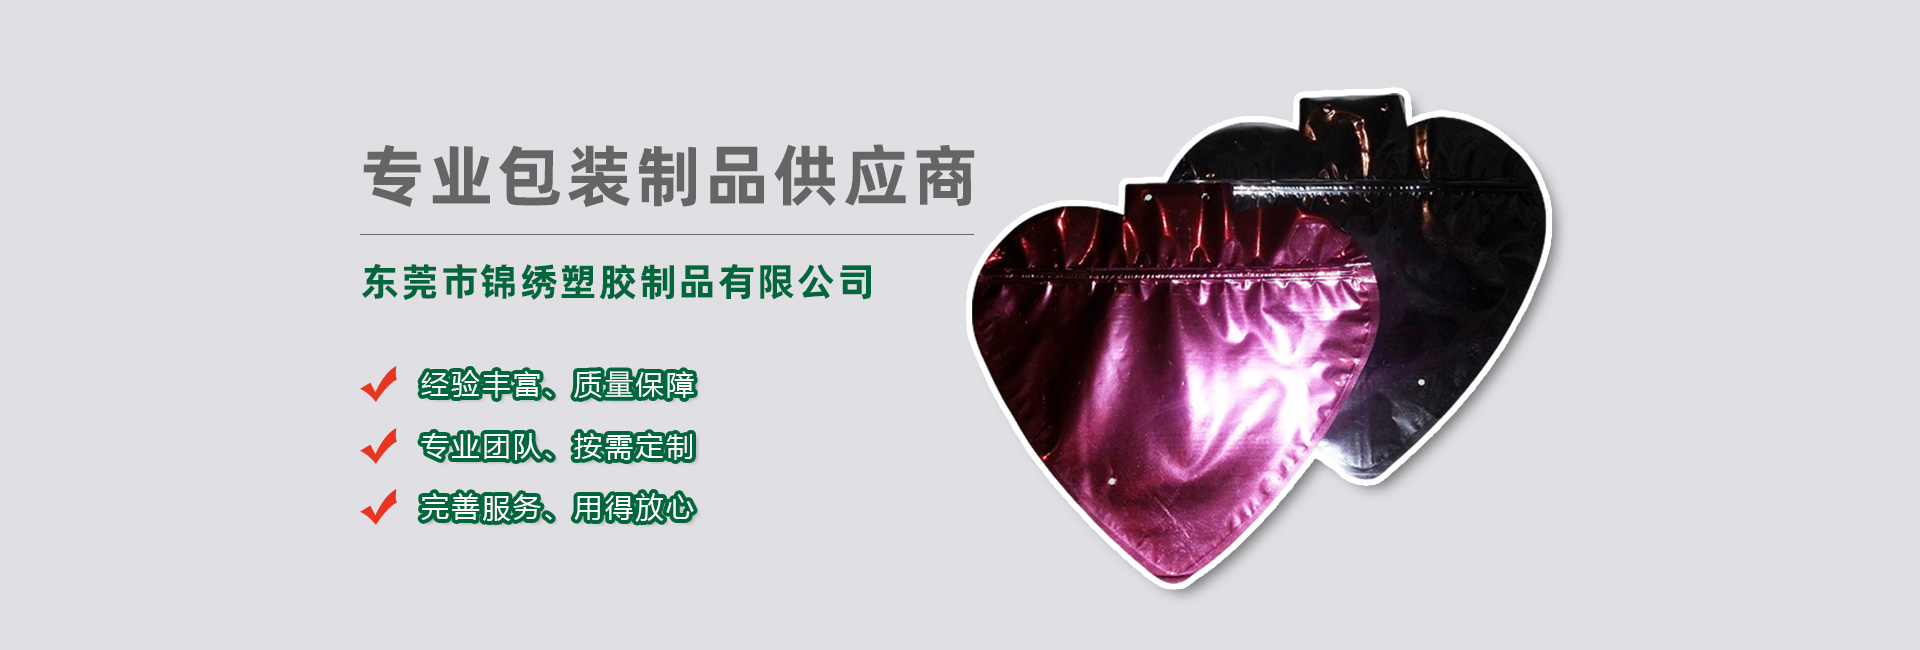 浙江食品袋banner